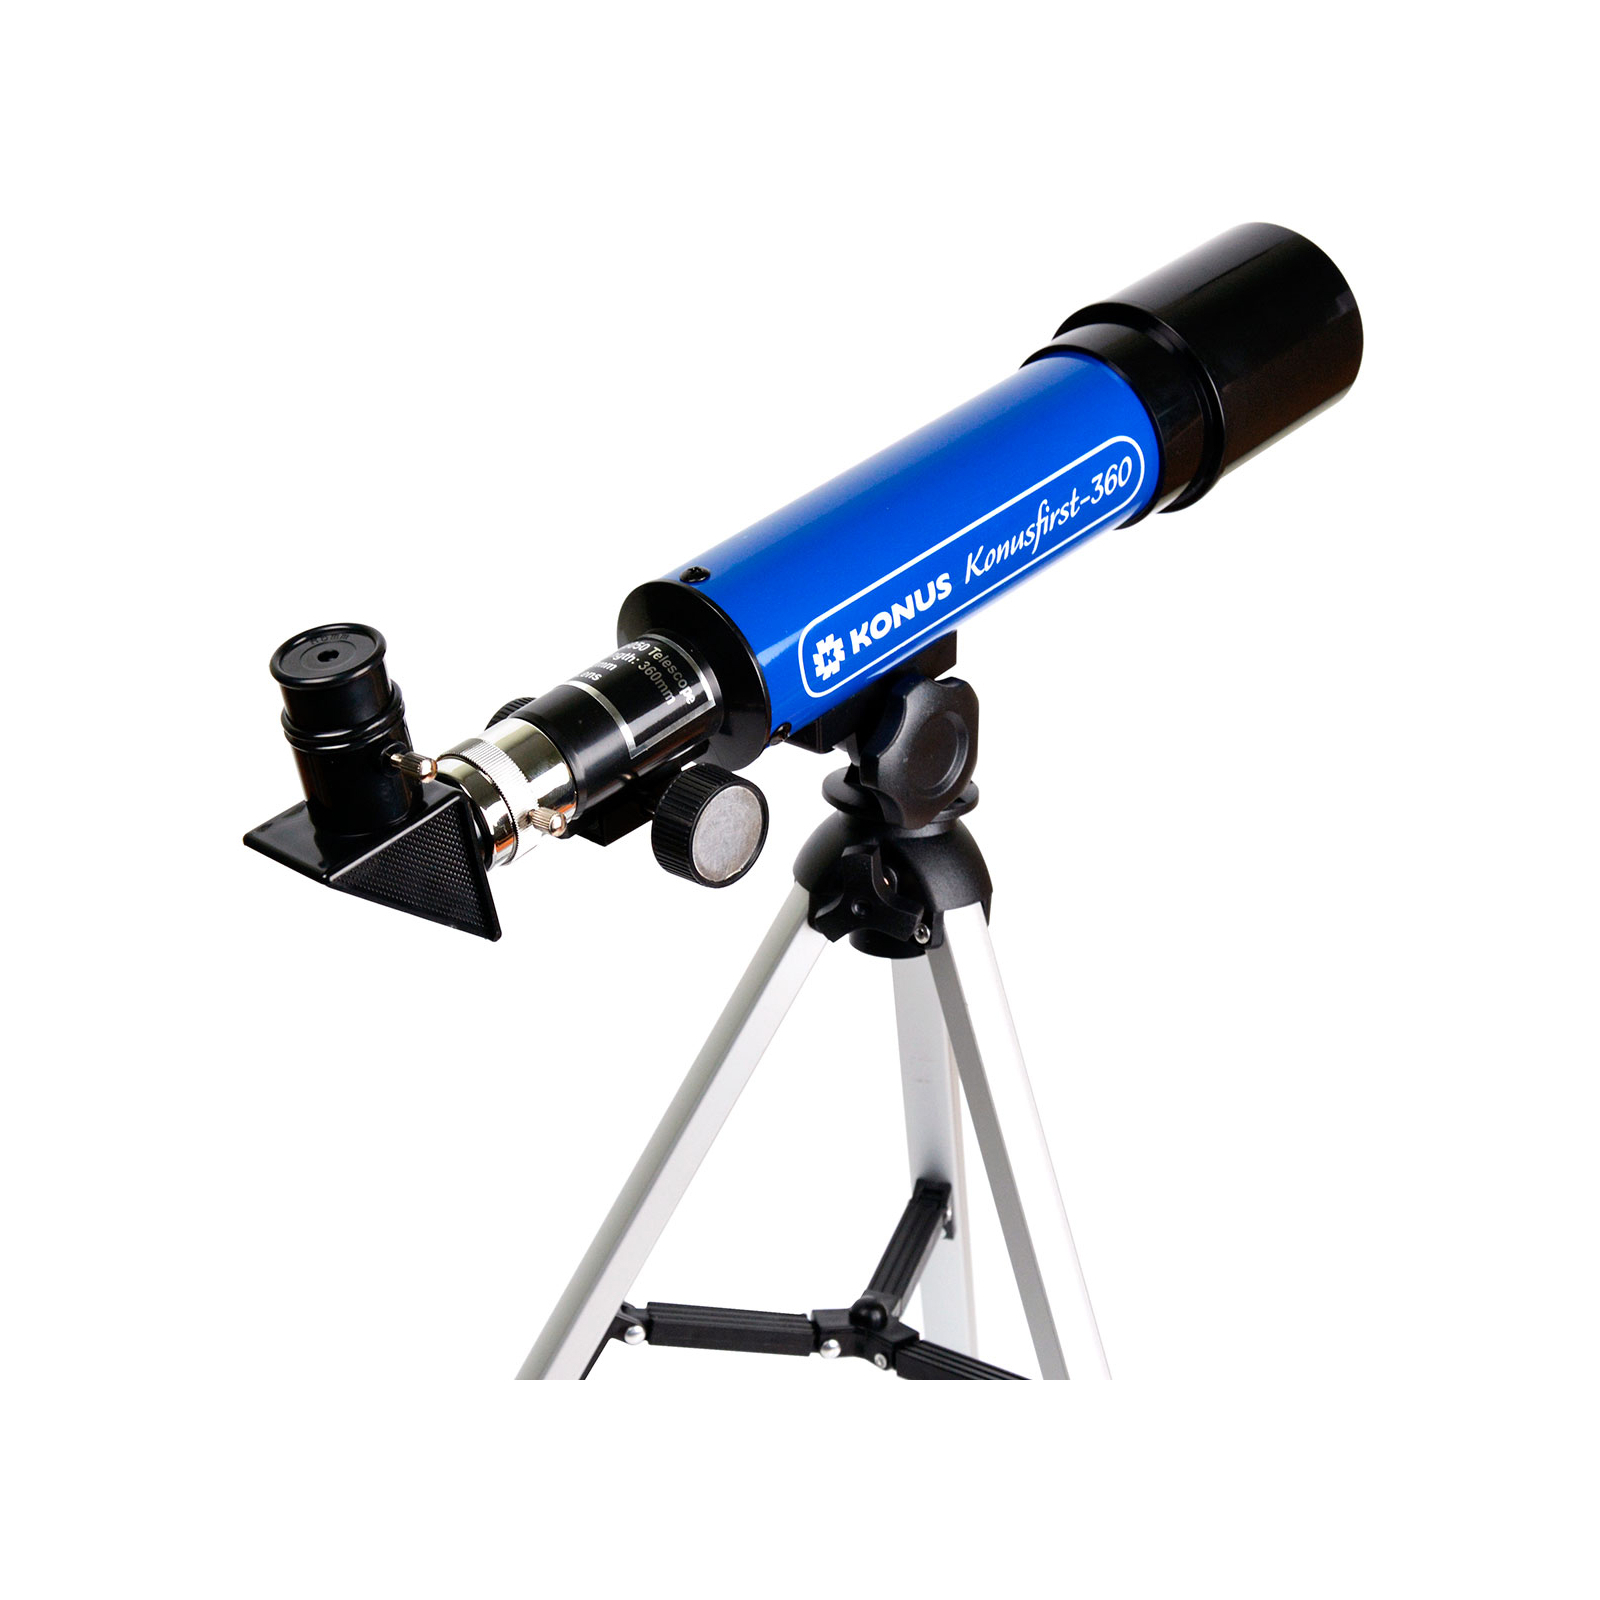 Телескоп Konus KonusFirst-360 50/360 (1722) изображение 2